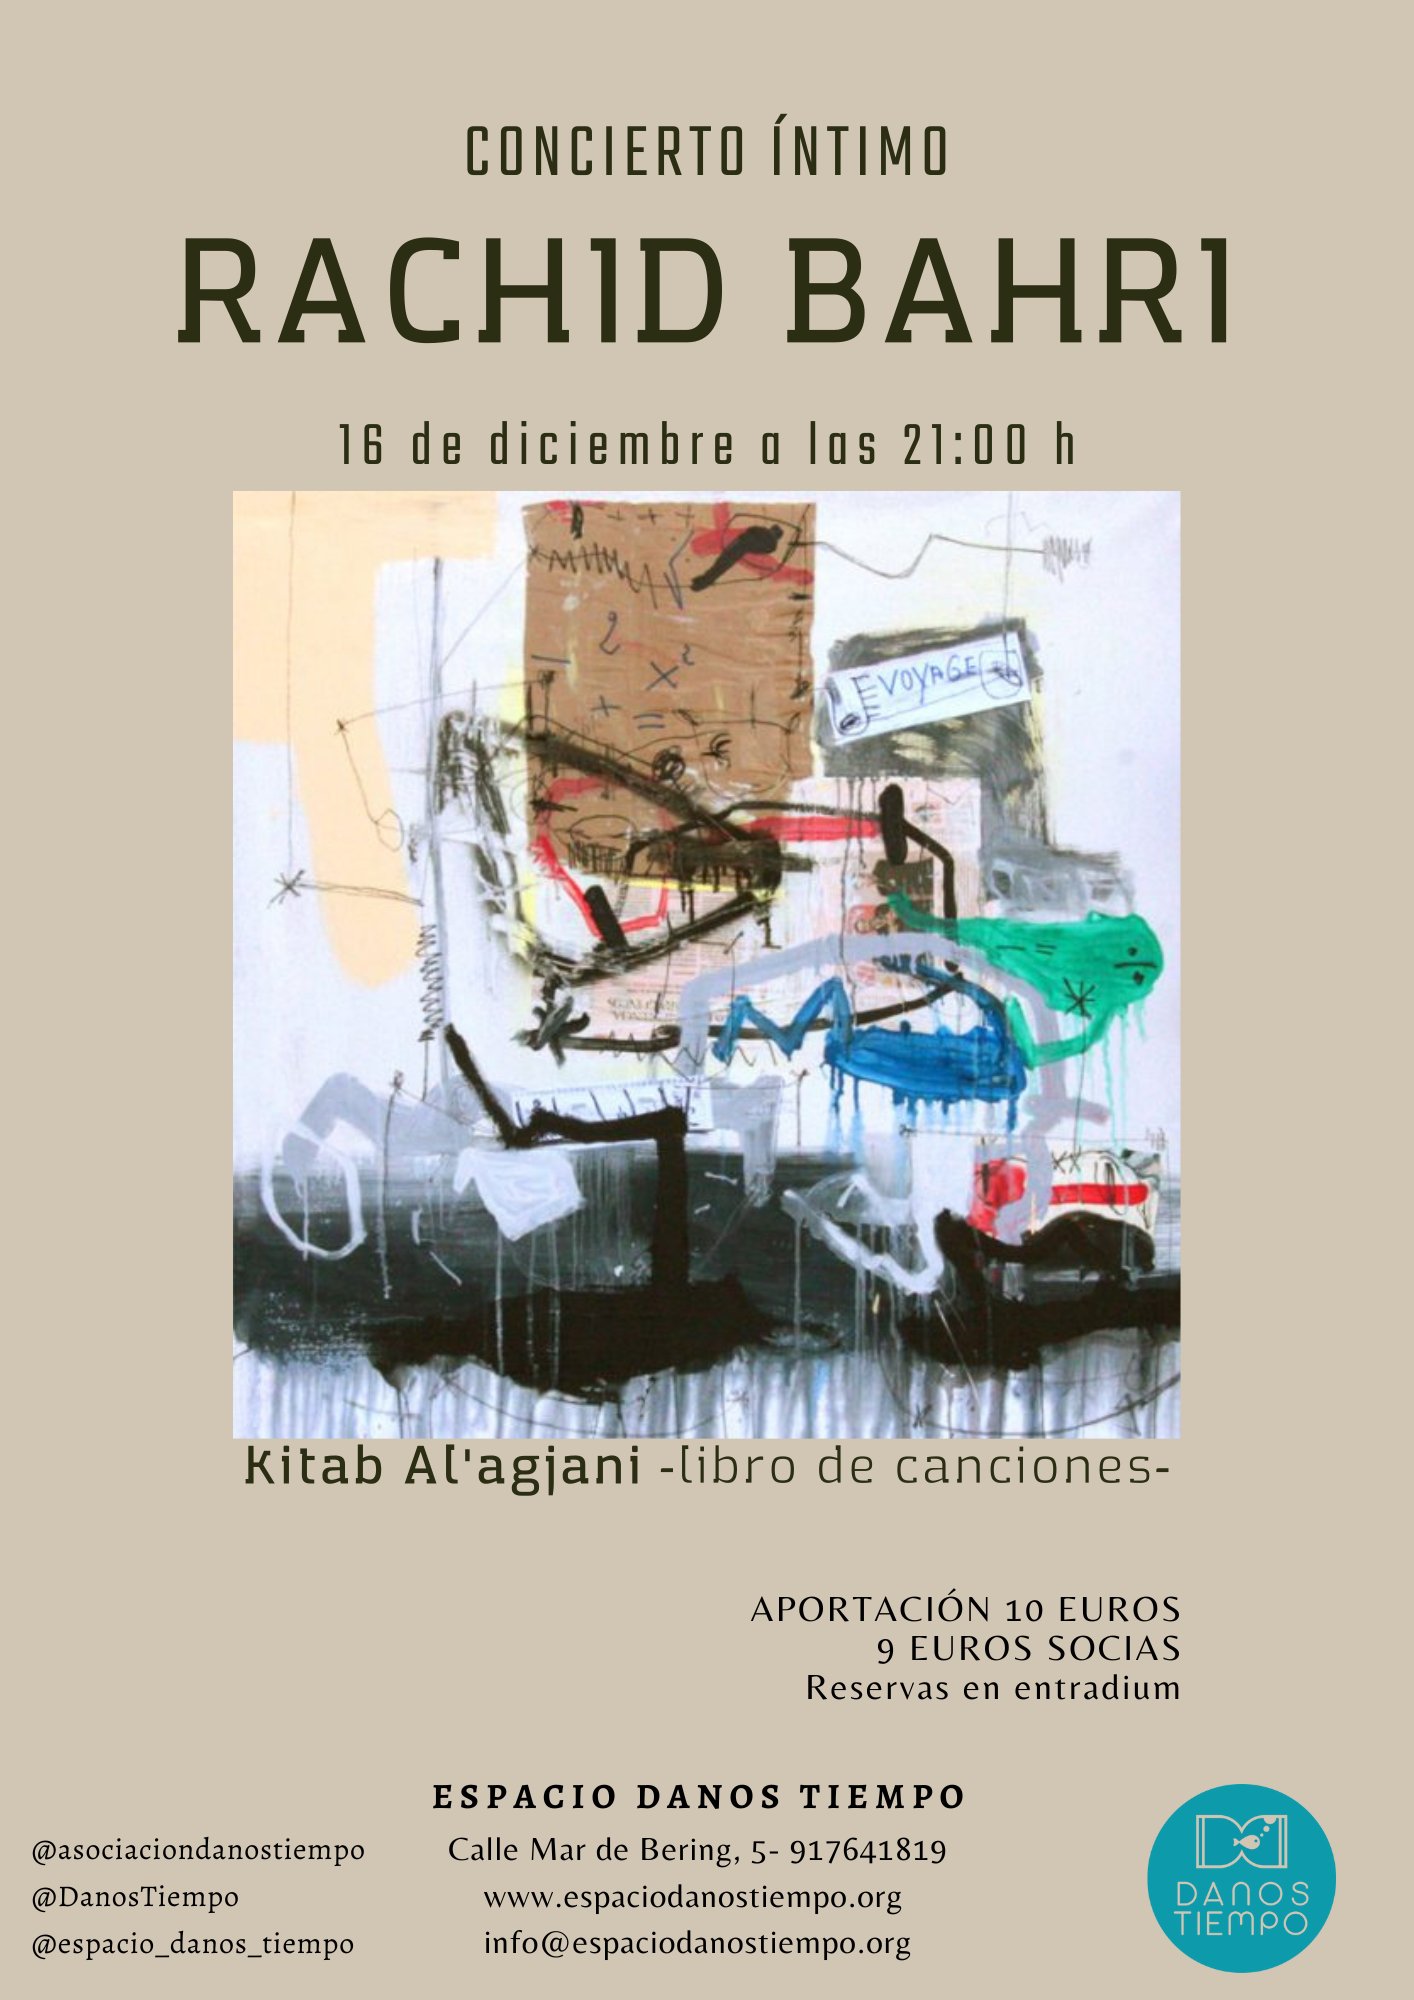 Rachid Bahri